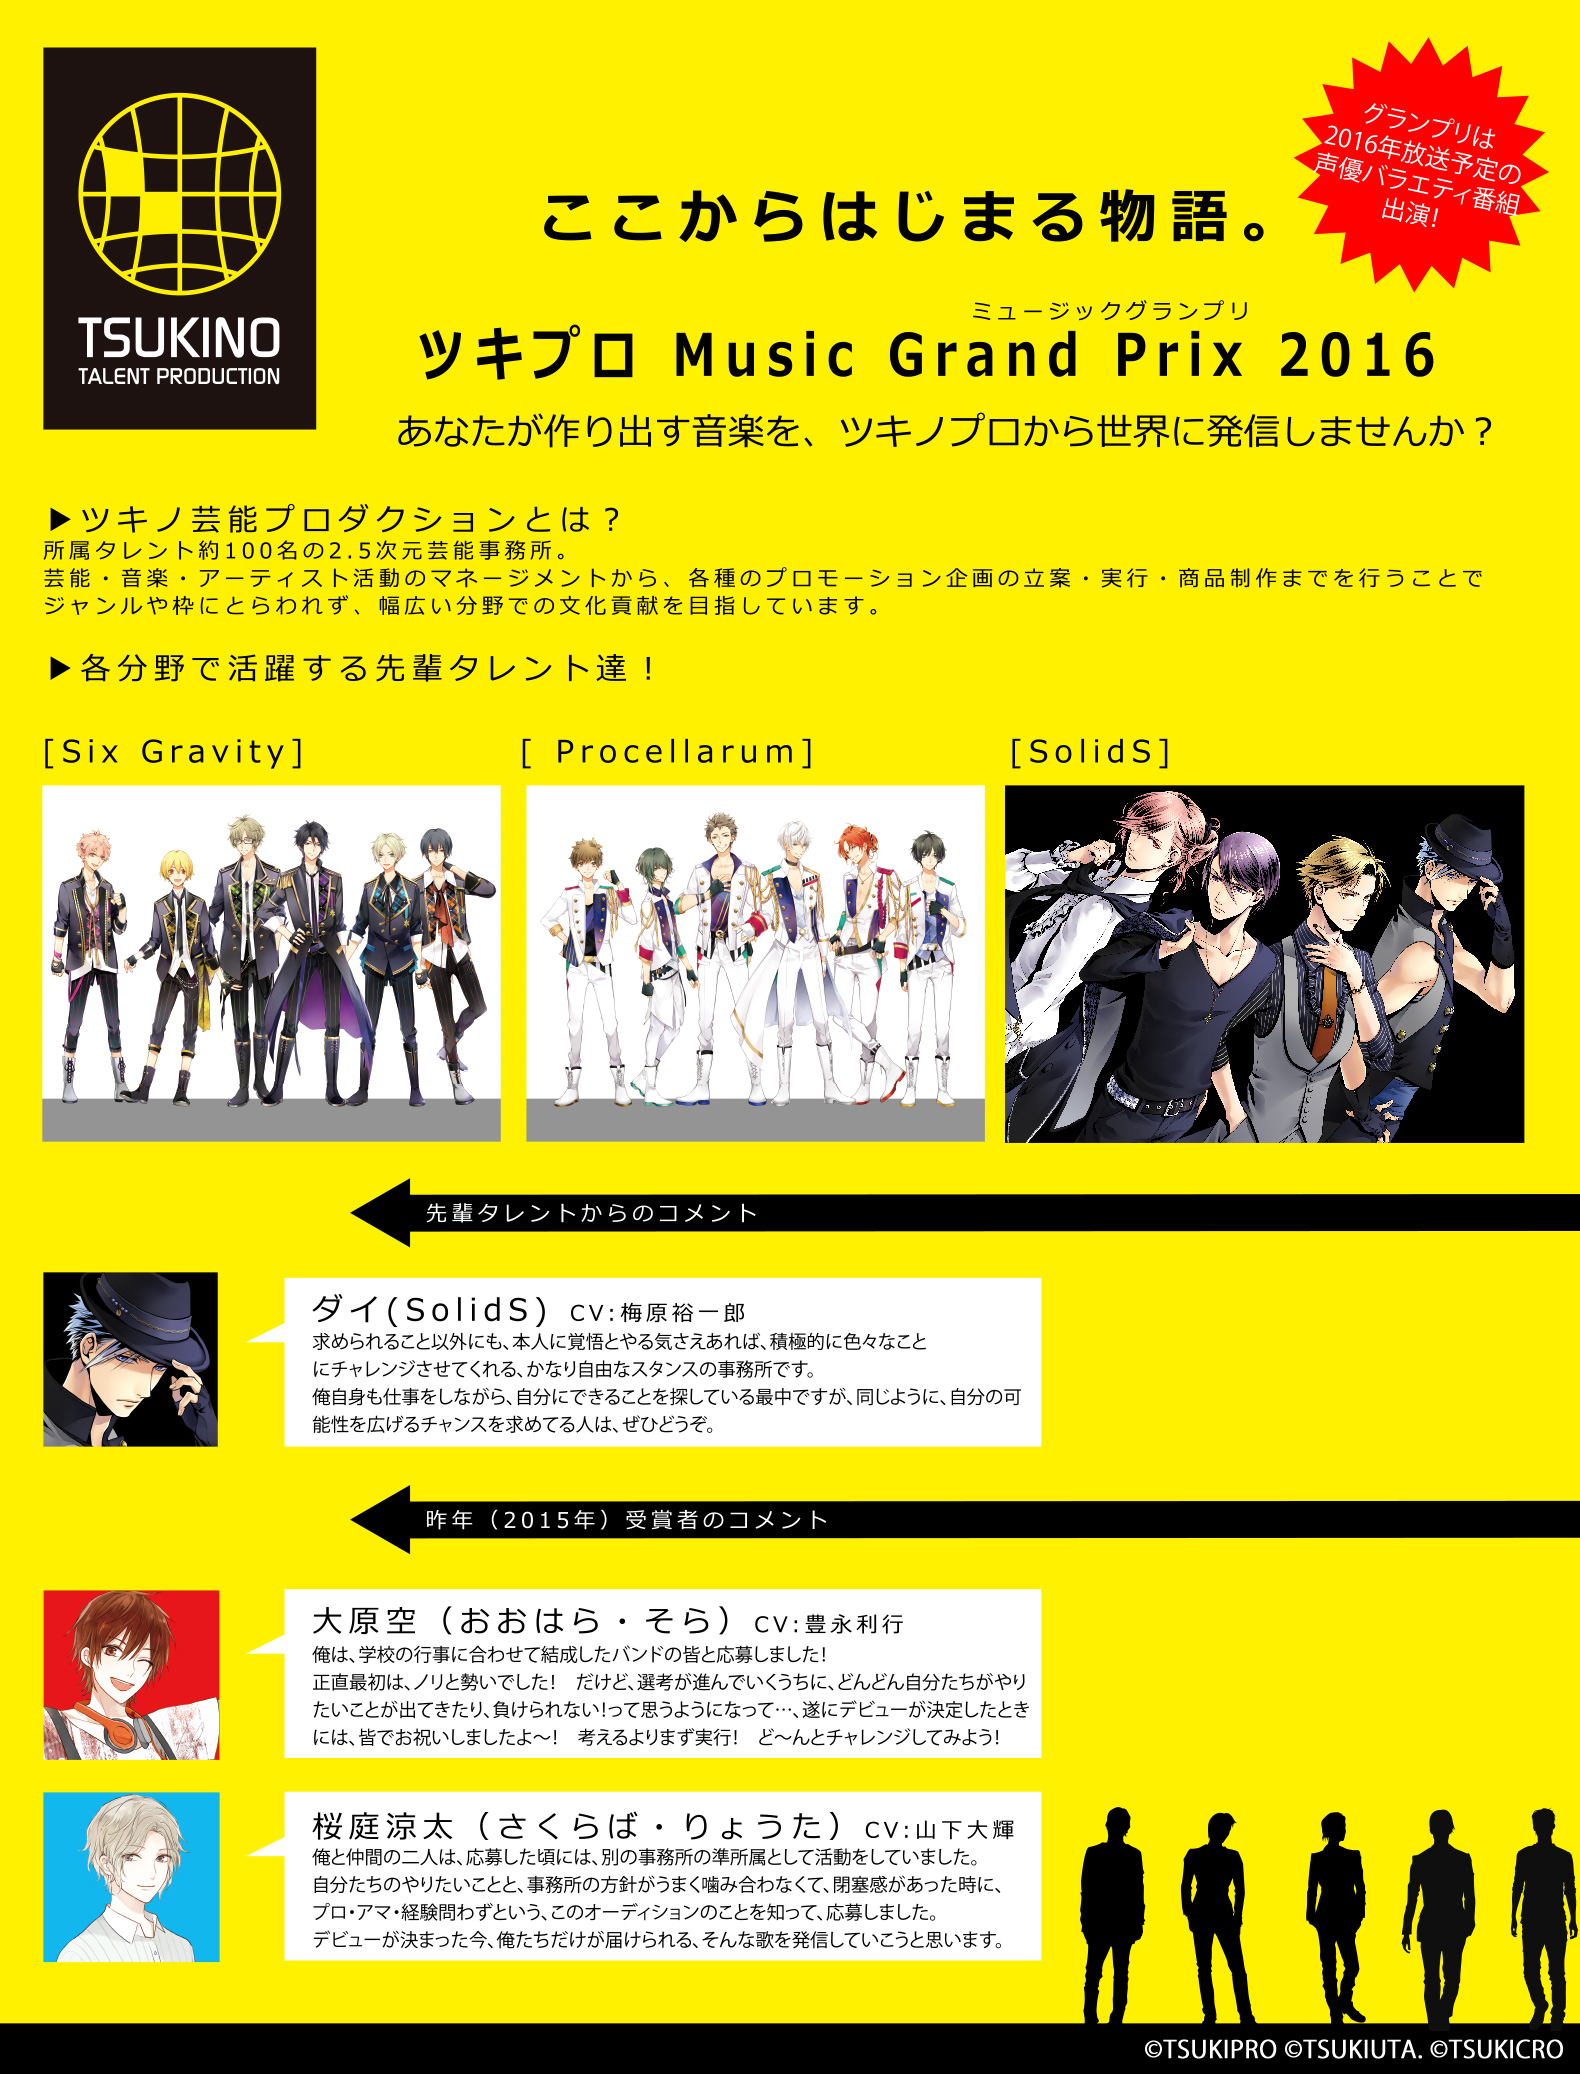 ツキプロ Music Grand Prix 2016